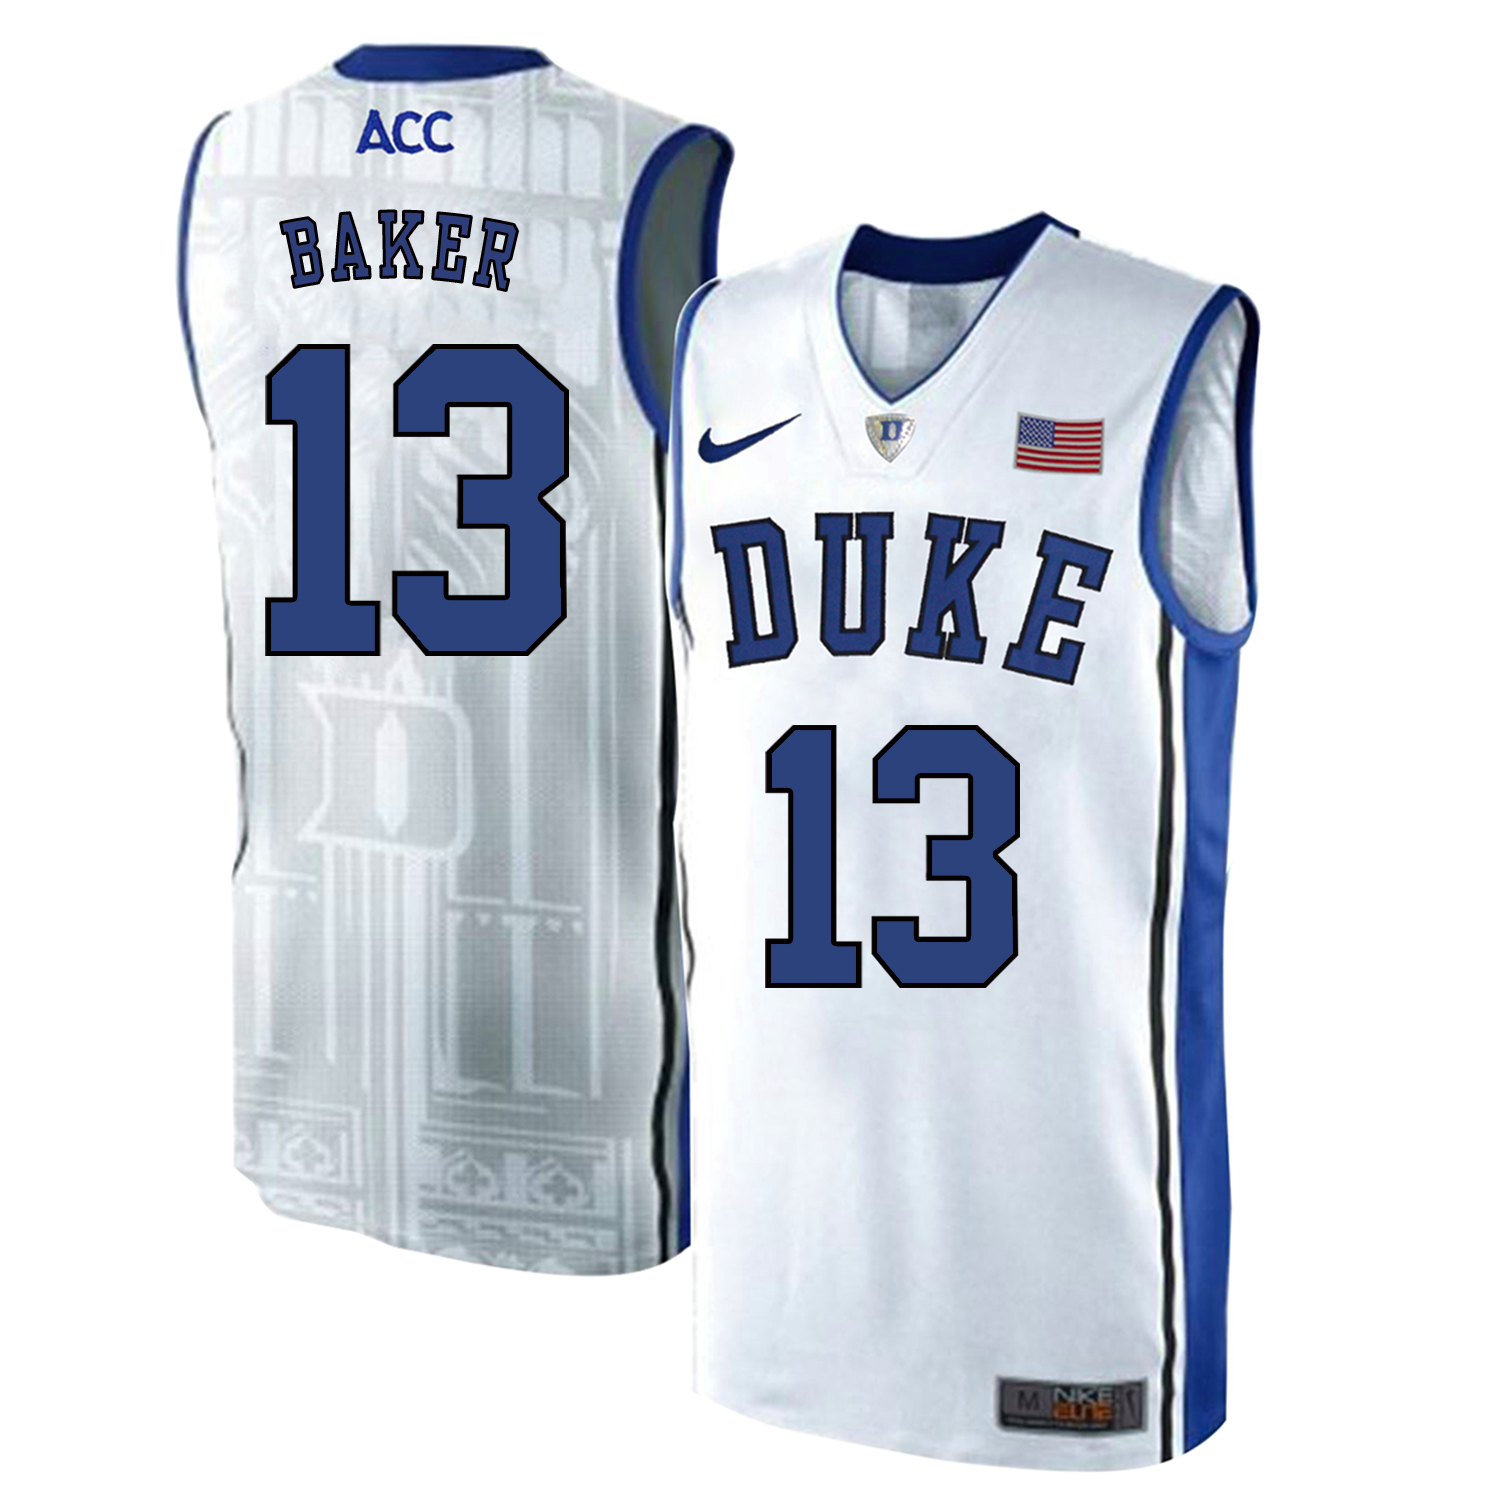 Duke Blue Devils 13 Joey Baker White Elite Nike College Basketball Jersey